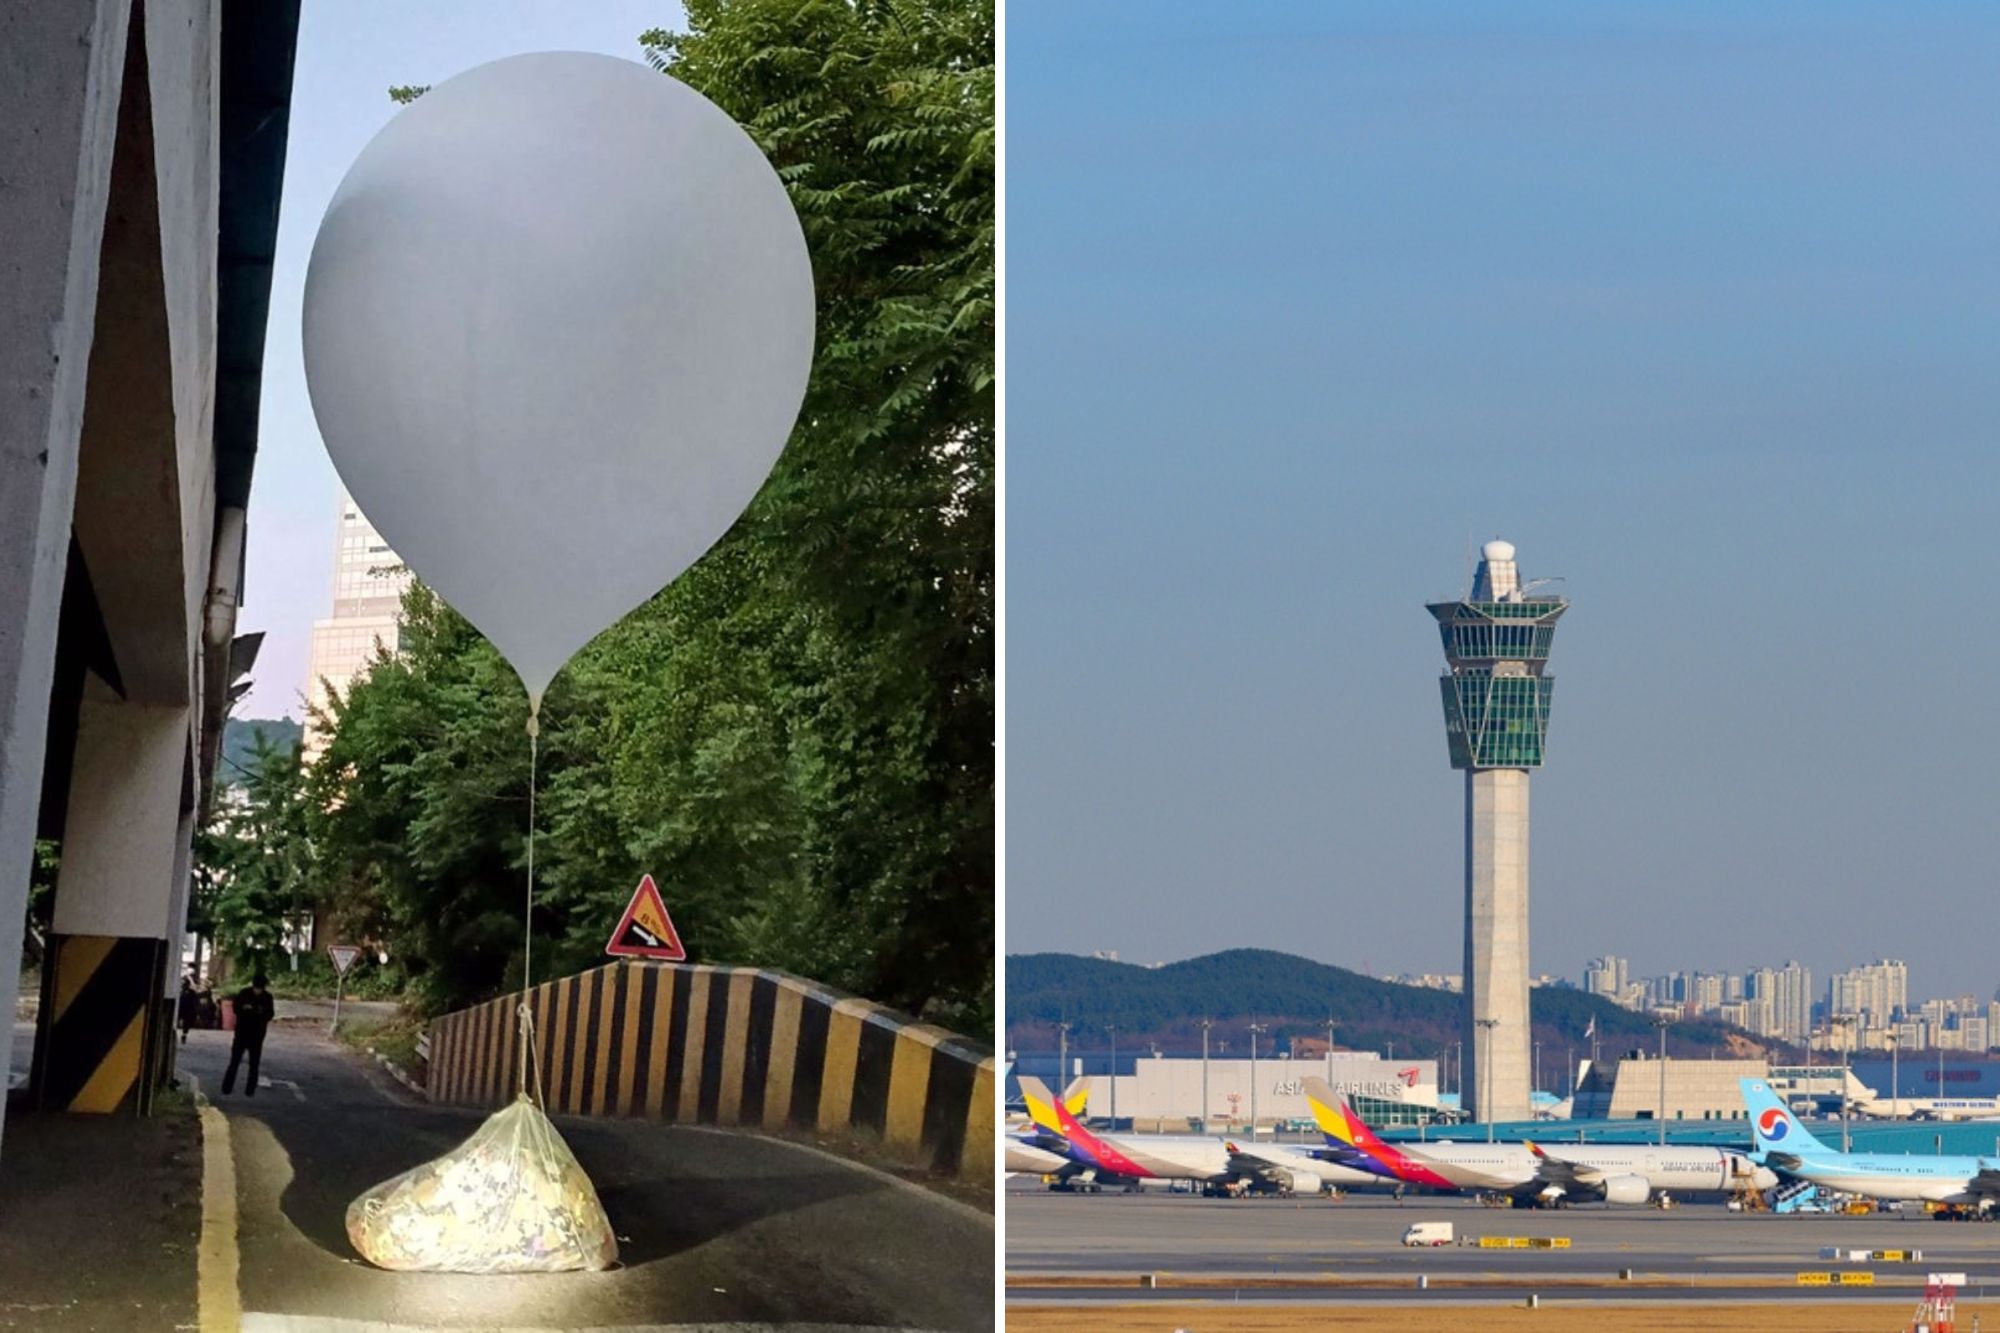 koreja e veriut vijon dergimin e balonave me mbetje drejt jugut nderpriten fluturimet ne aeroportin e seulit